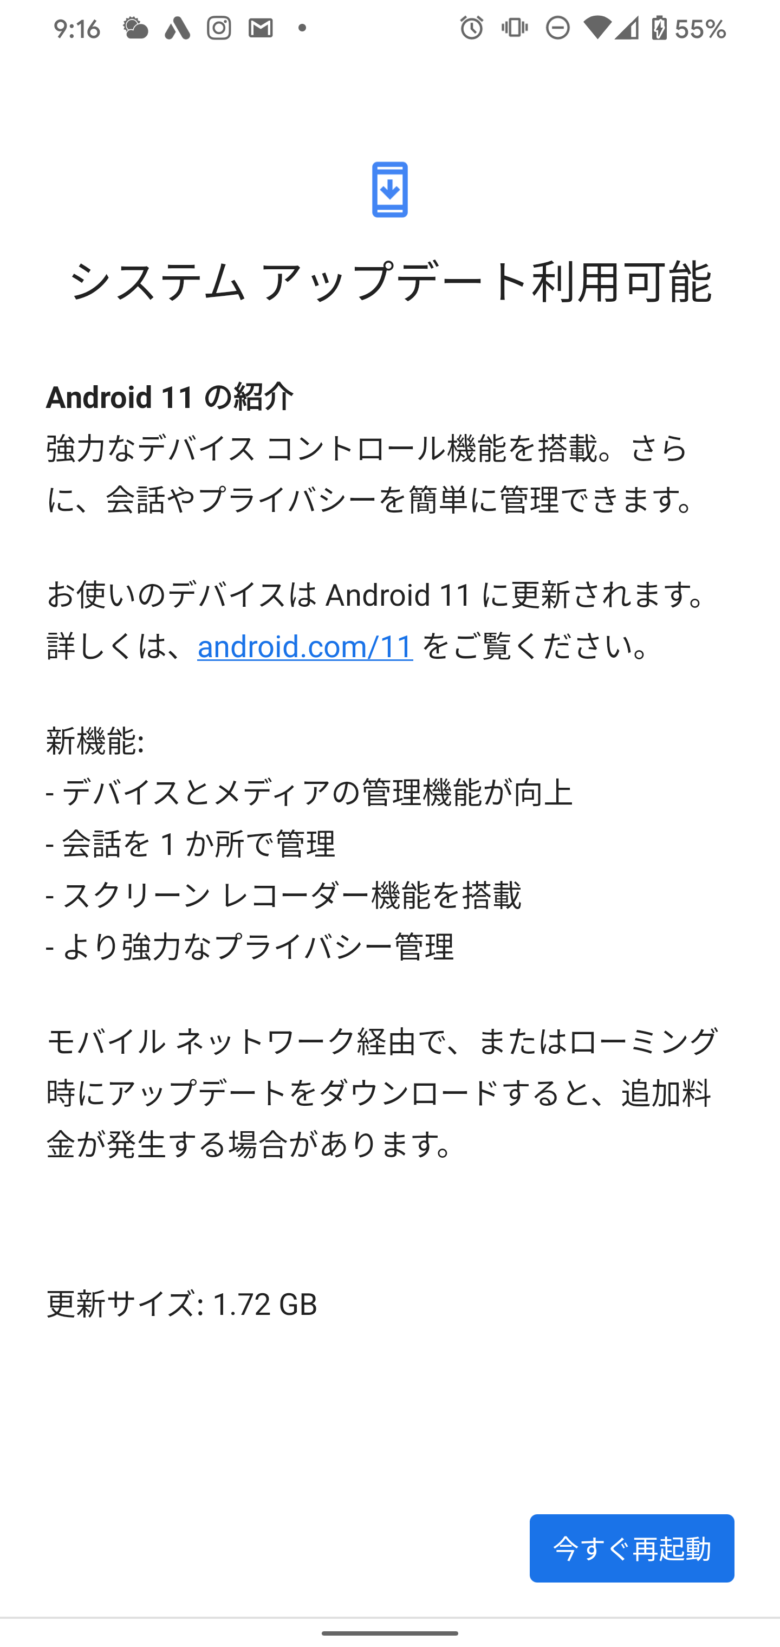 Android11へのシステムアップデート。再起動を促す画面です。